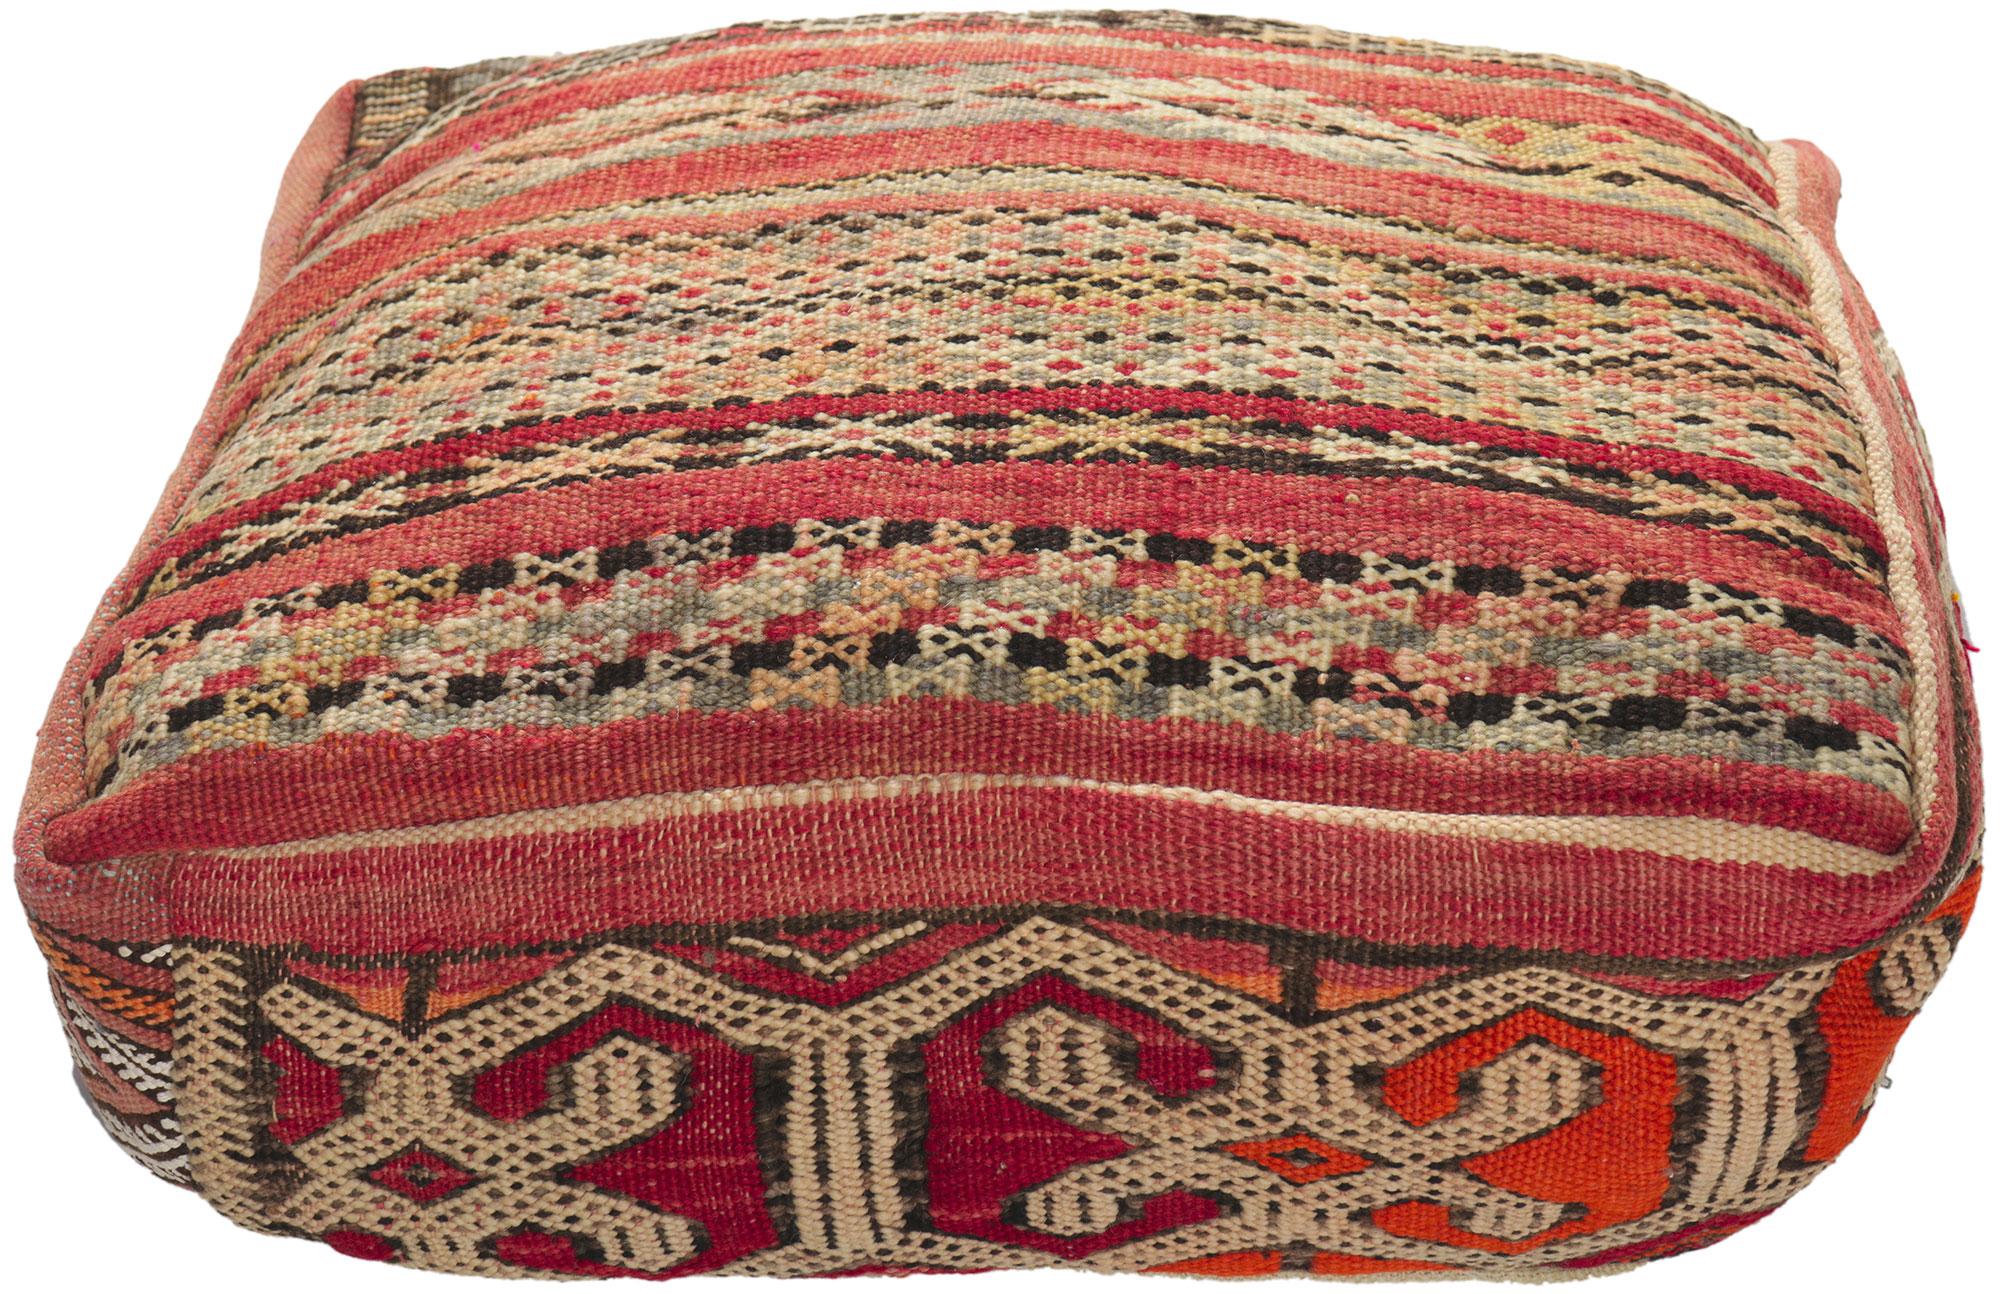 Tribal Vintage Moroccan Kilim Pouf Ottoman